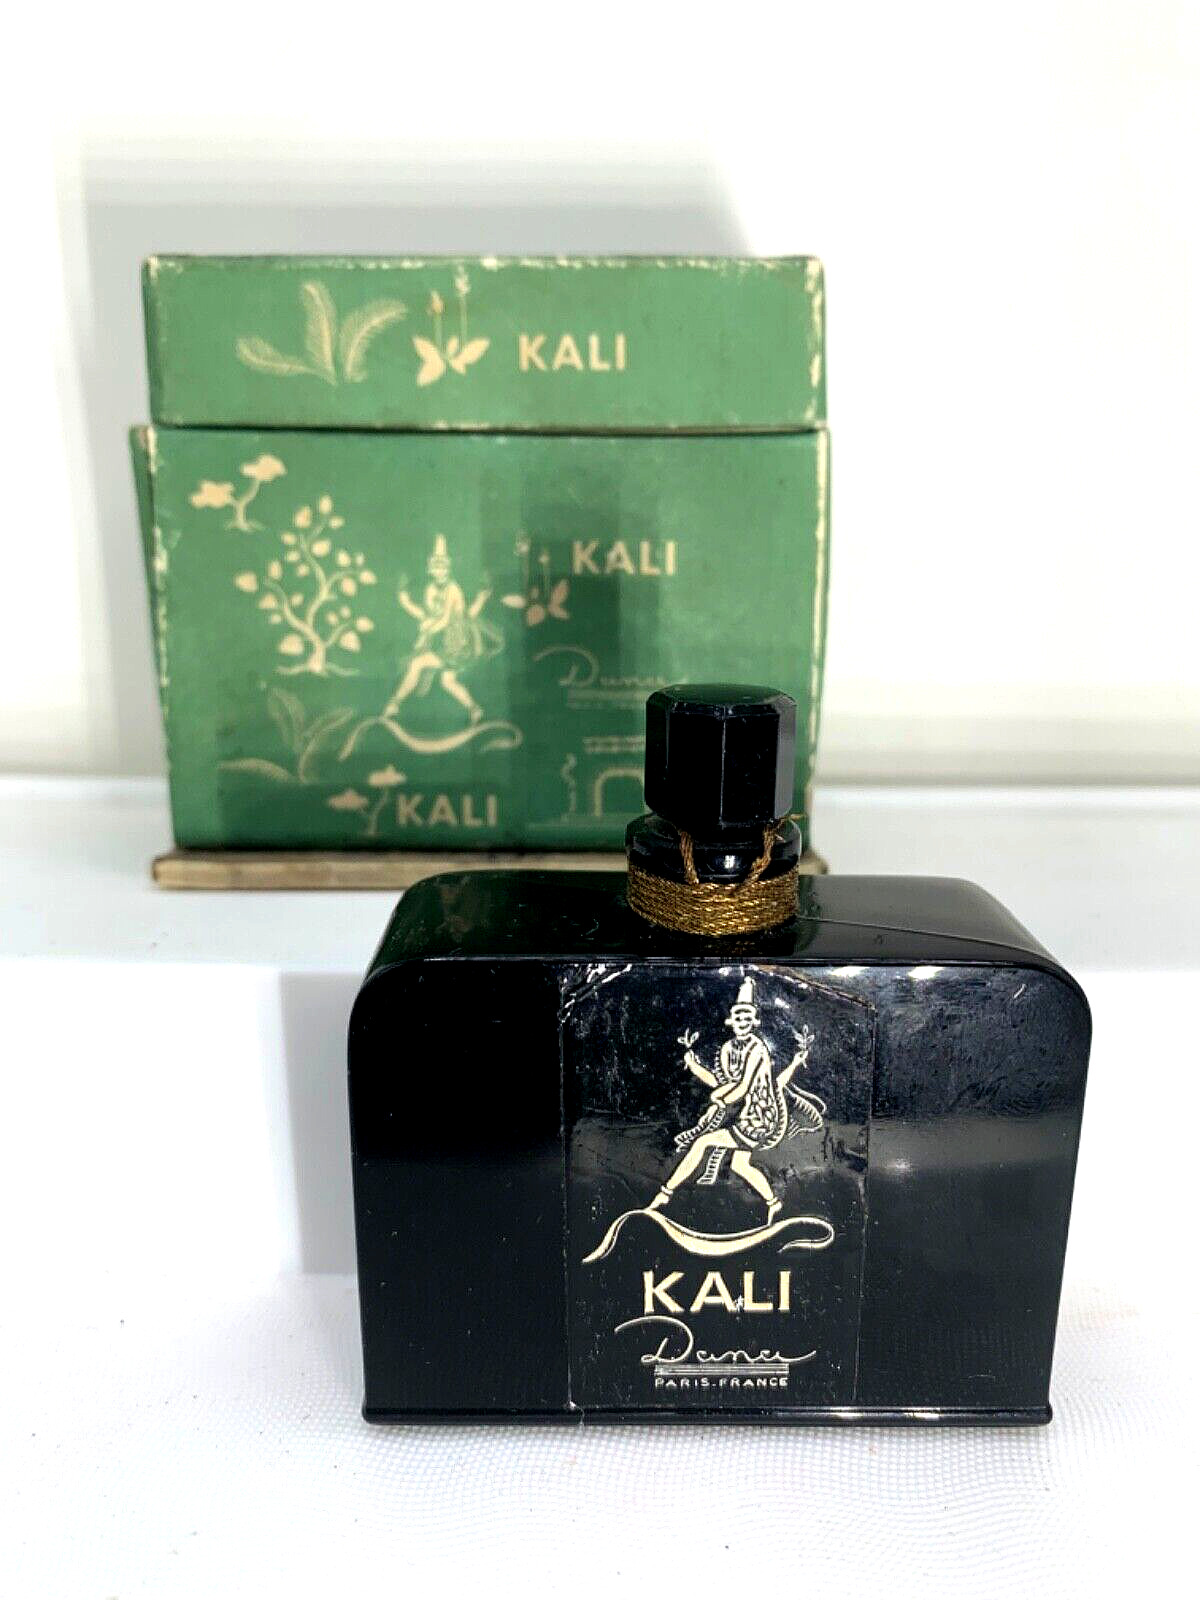 Rare  Sealed  Vintage black perfume bottle w/box.  Kali by Dana.  1 oz.  1955.